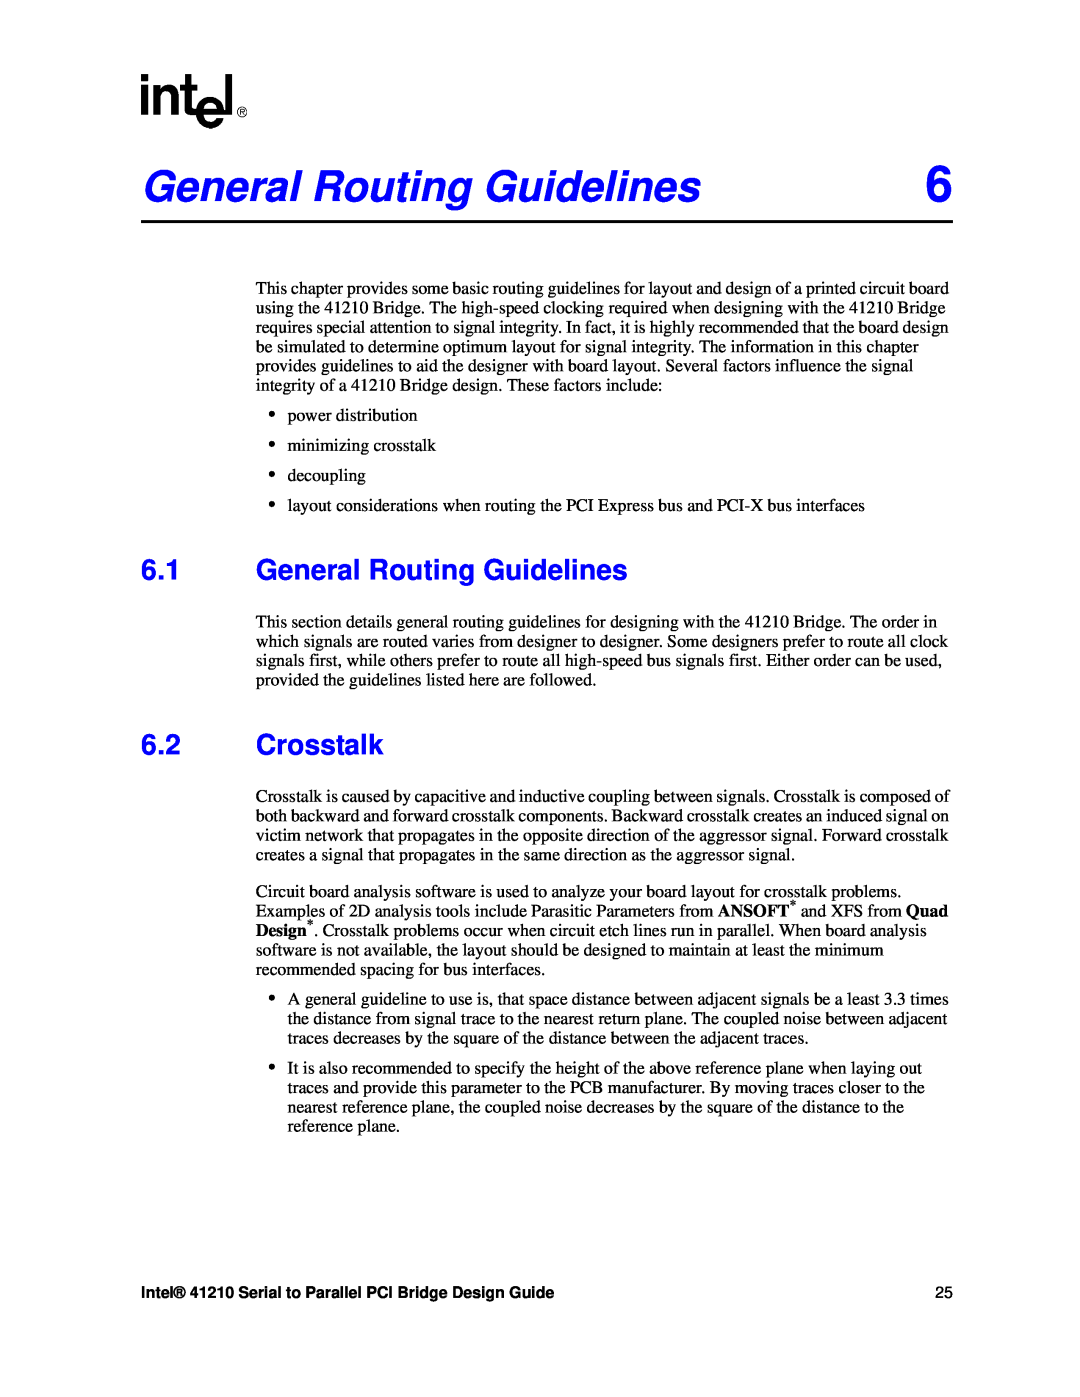 Intel 41210 manual General Routing Guidelines, Crosstalk 